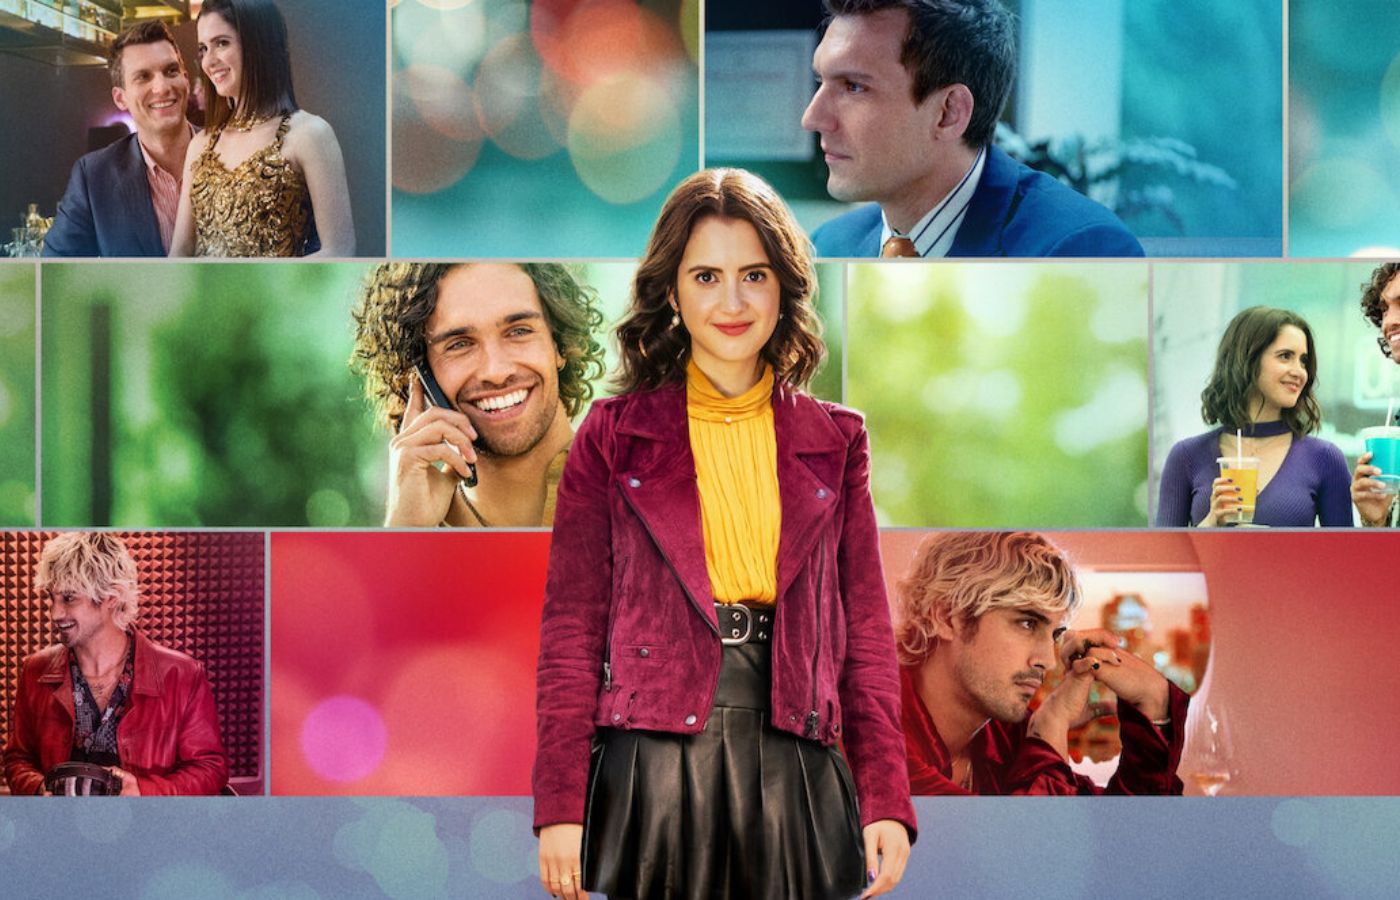 Netflix lança filme interativo de comédia romântica; entenda como funciona